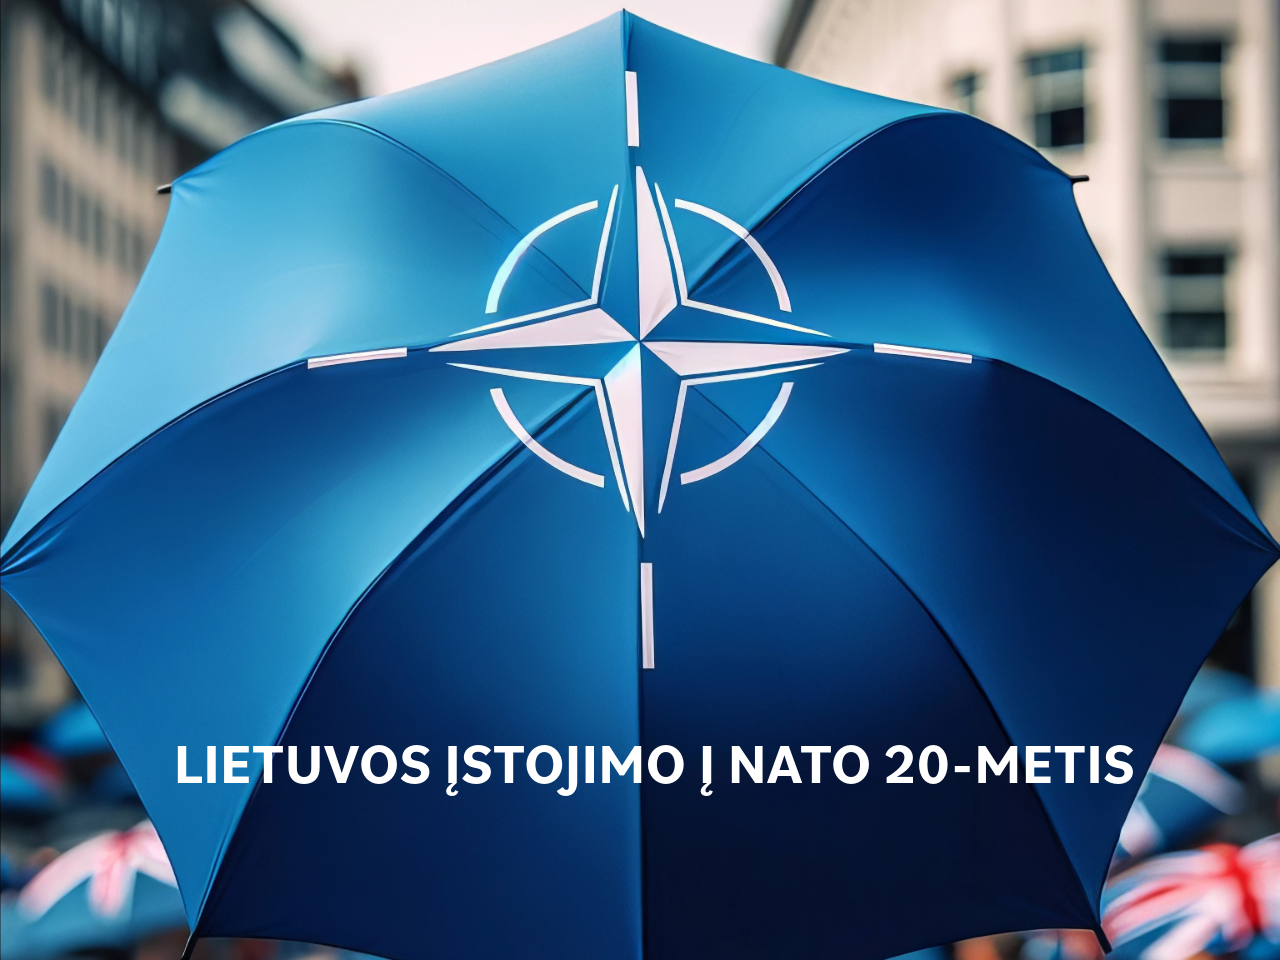 Kviečiame švęsti Lietuvos įstojimo į NATO 20-metį